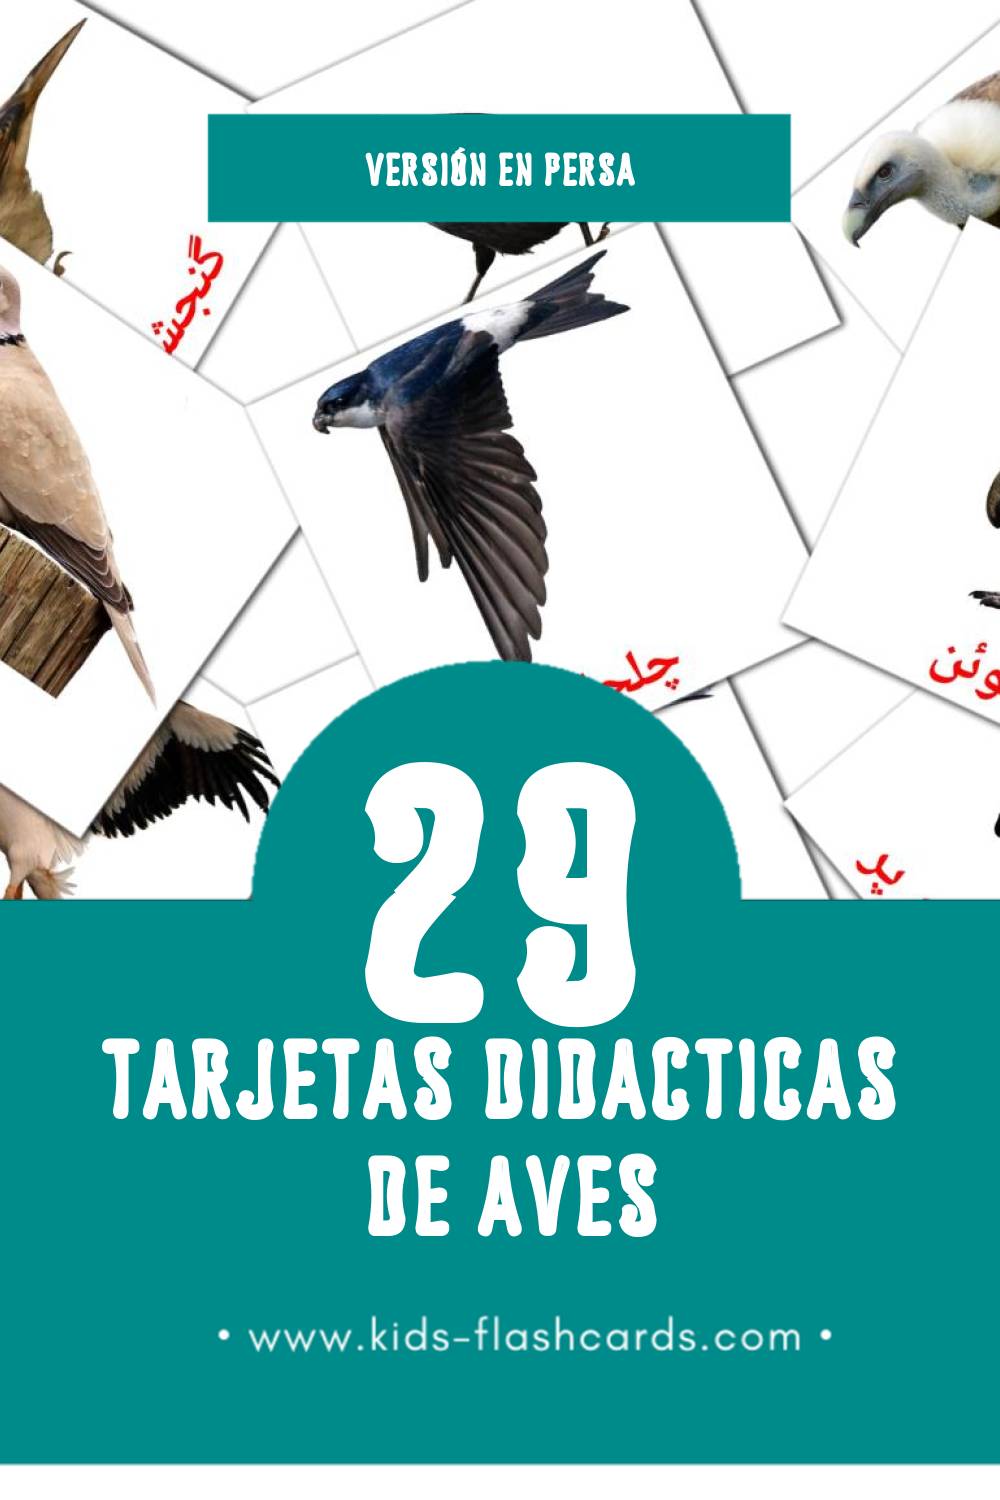 Tarjetas visuales de پرنده ها para niños pequeños (29 tarjetas en Persa)